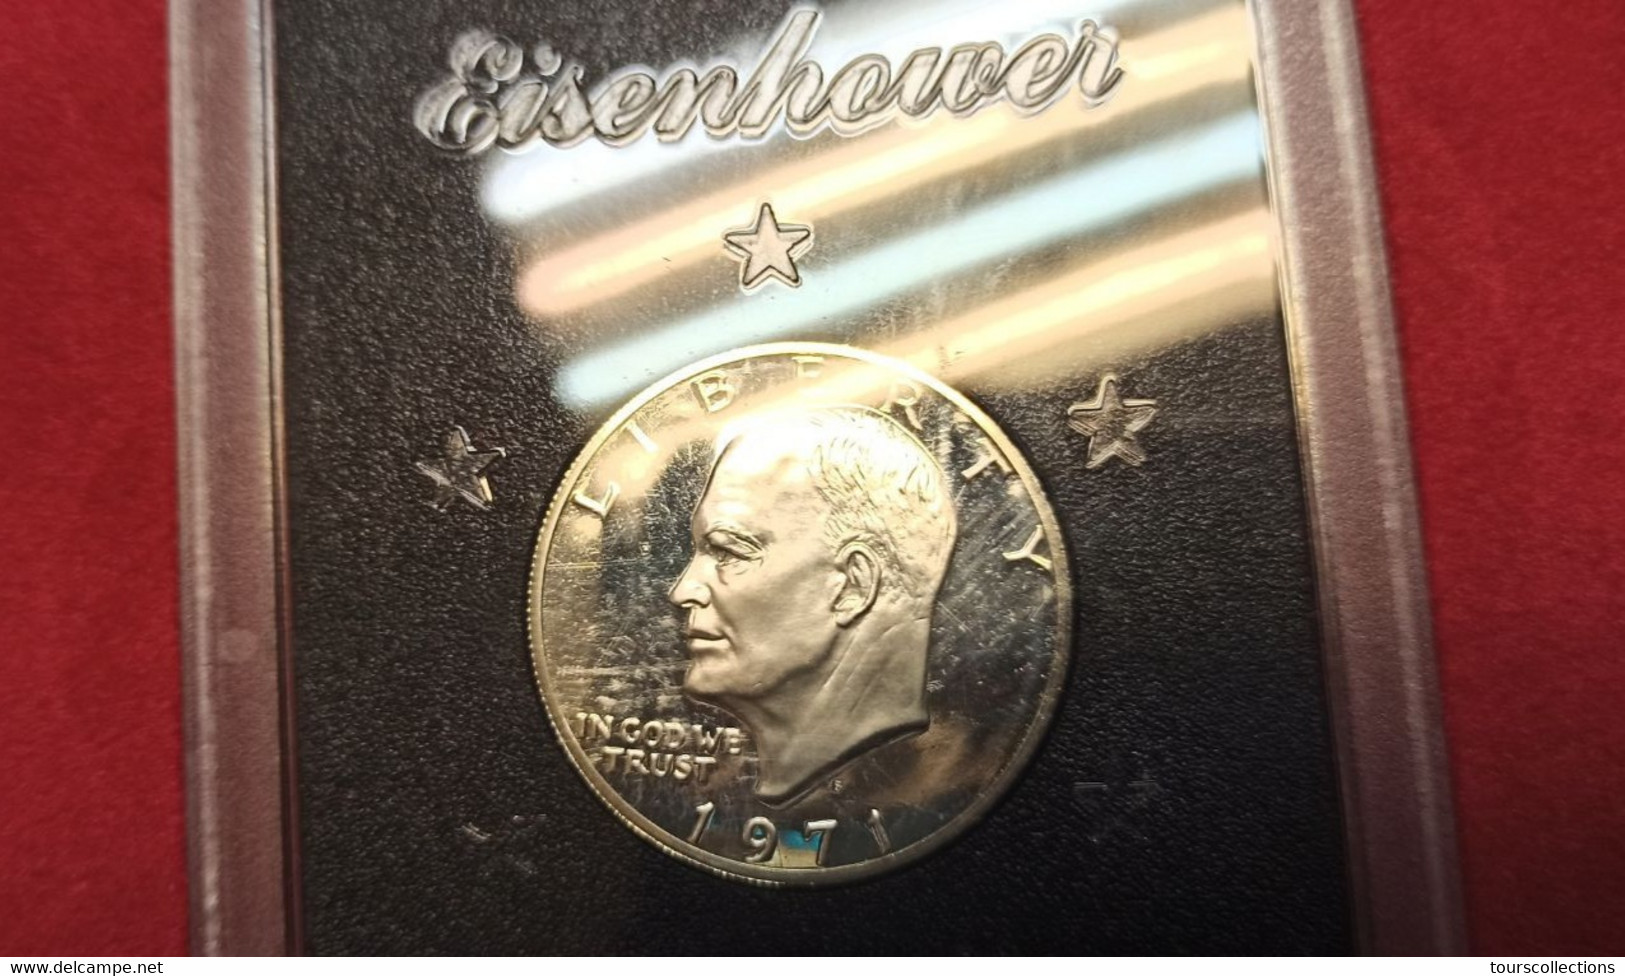 1971 S Eisenhower Silver Dollar Proof Set Scellé Et Dans Sa Boîte De Présentation D'origine 1 $ Etats Unis USA - Proof Sets